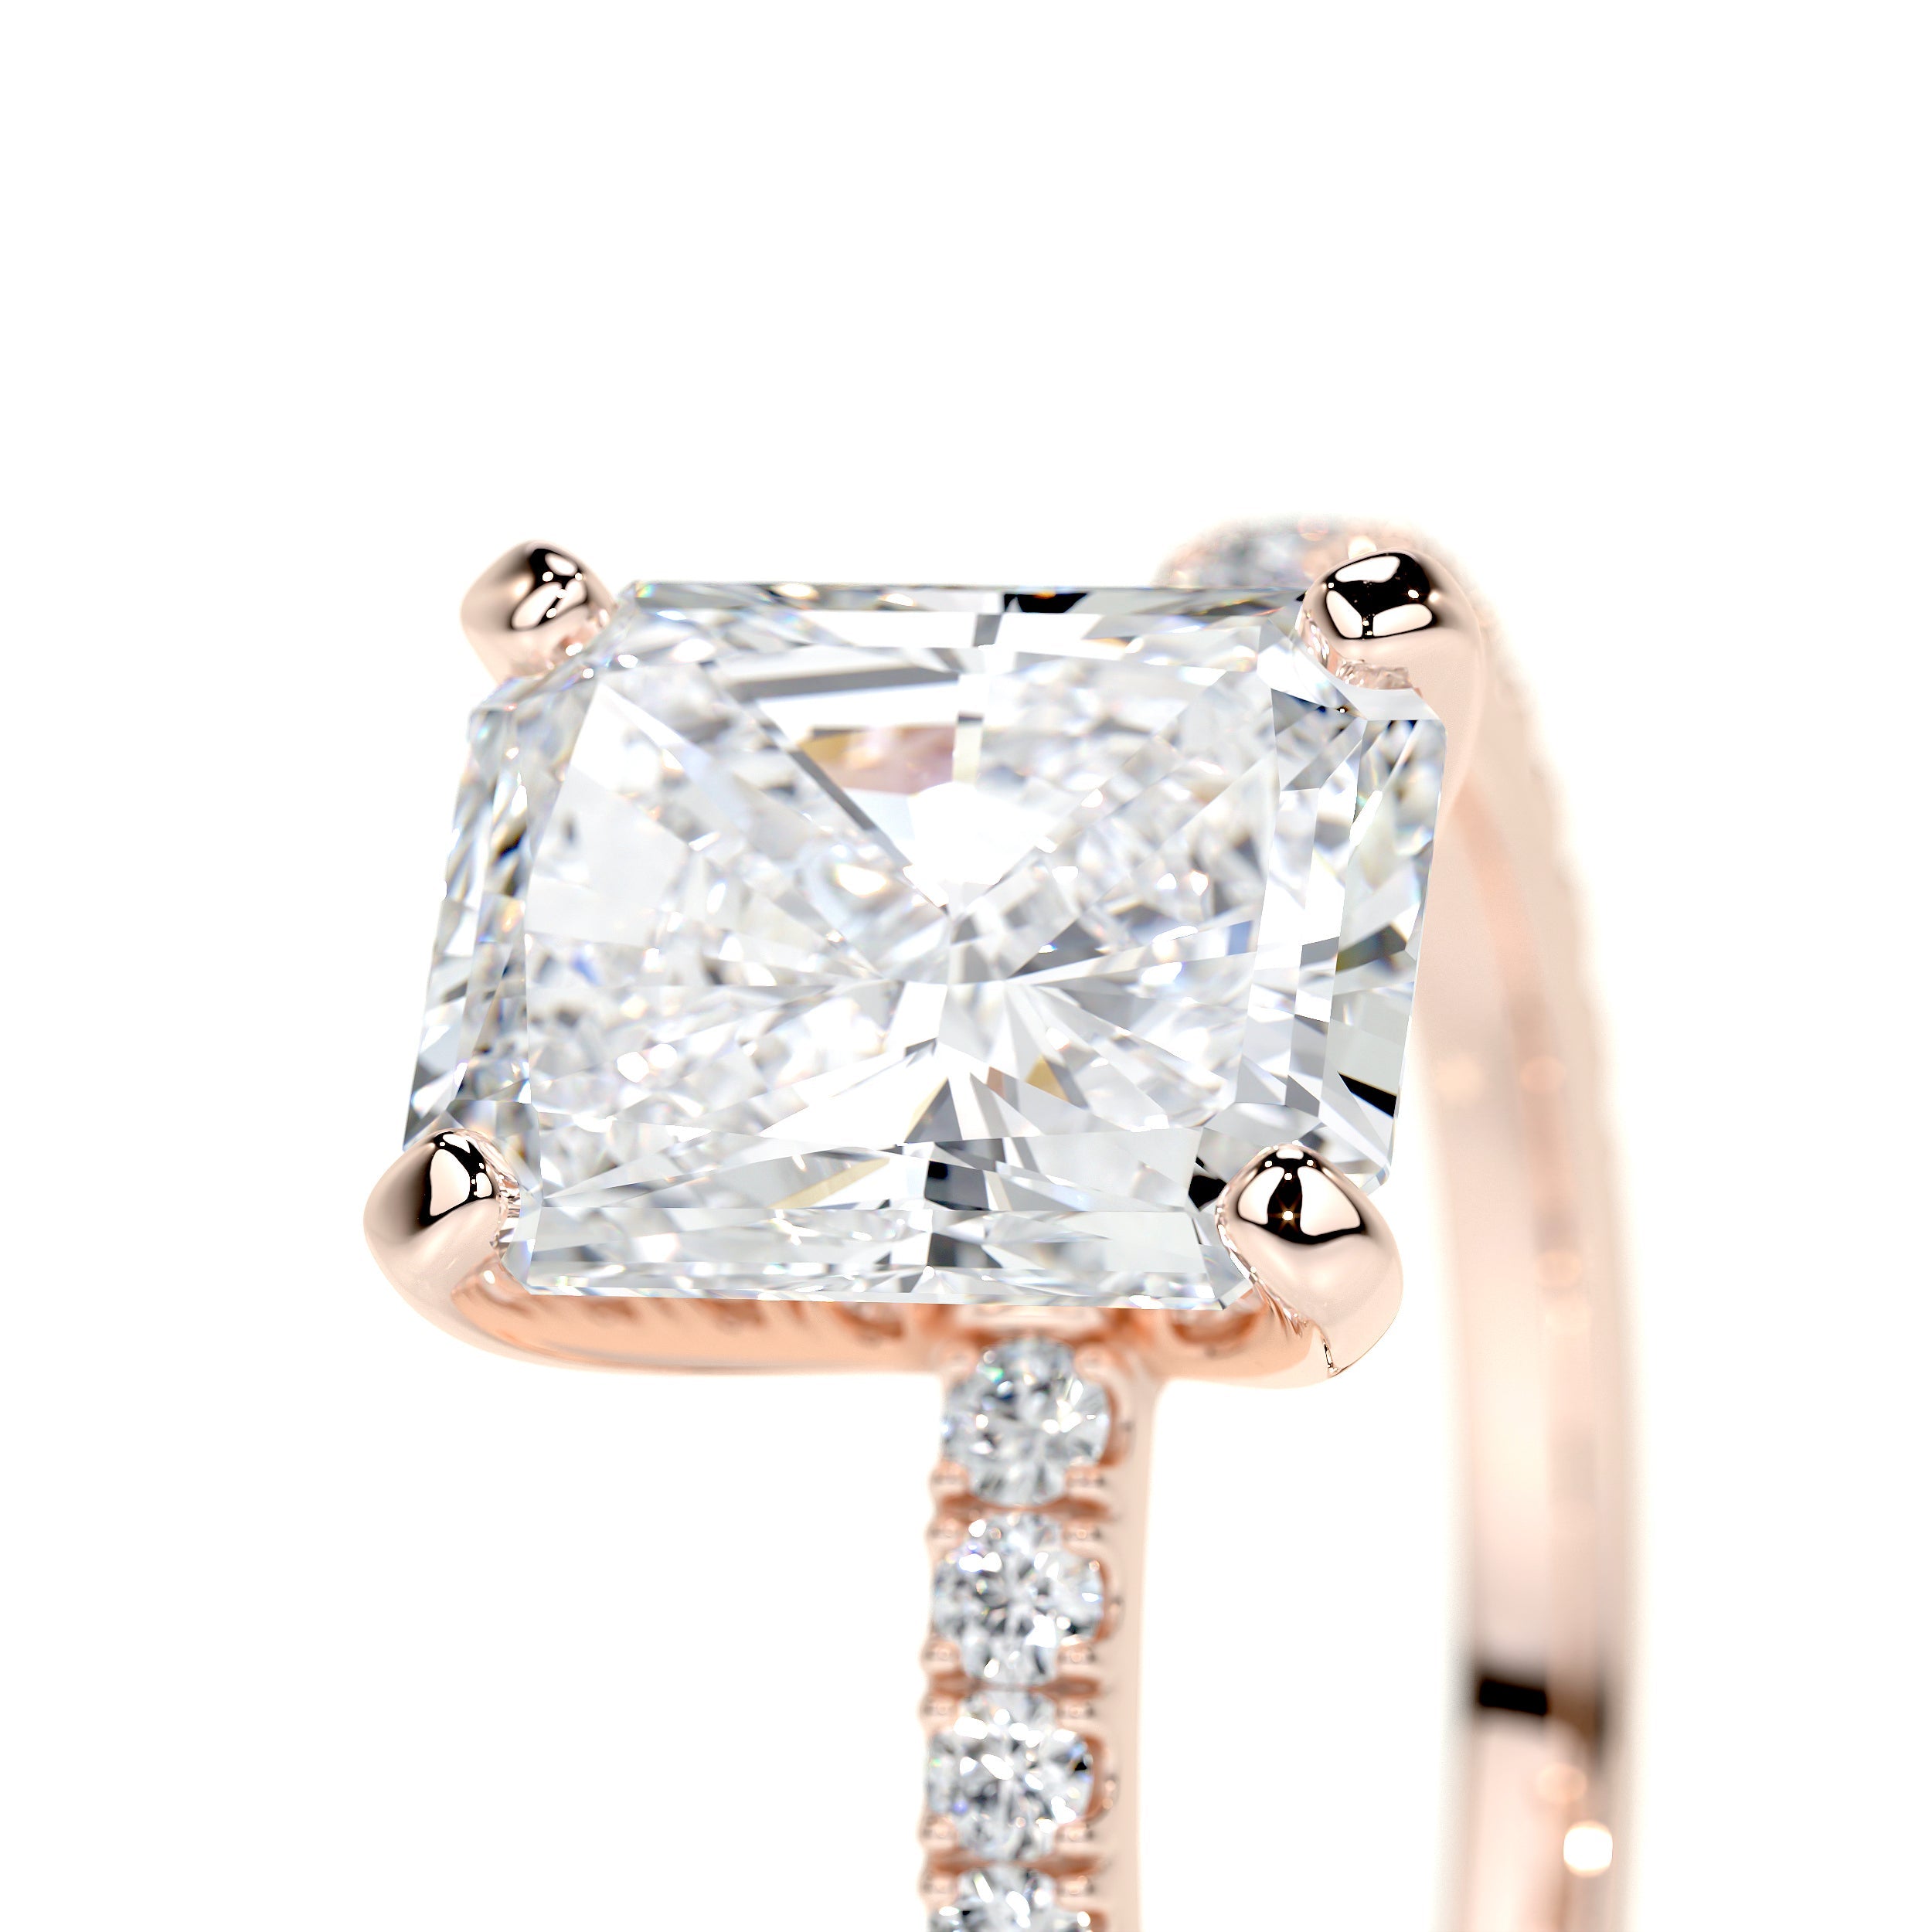 Audrey Lab Grown Diamond Ring   (2.3 Carat) -14K Rose Gold